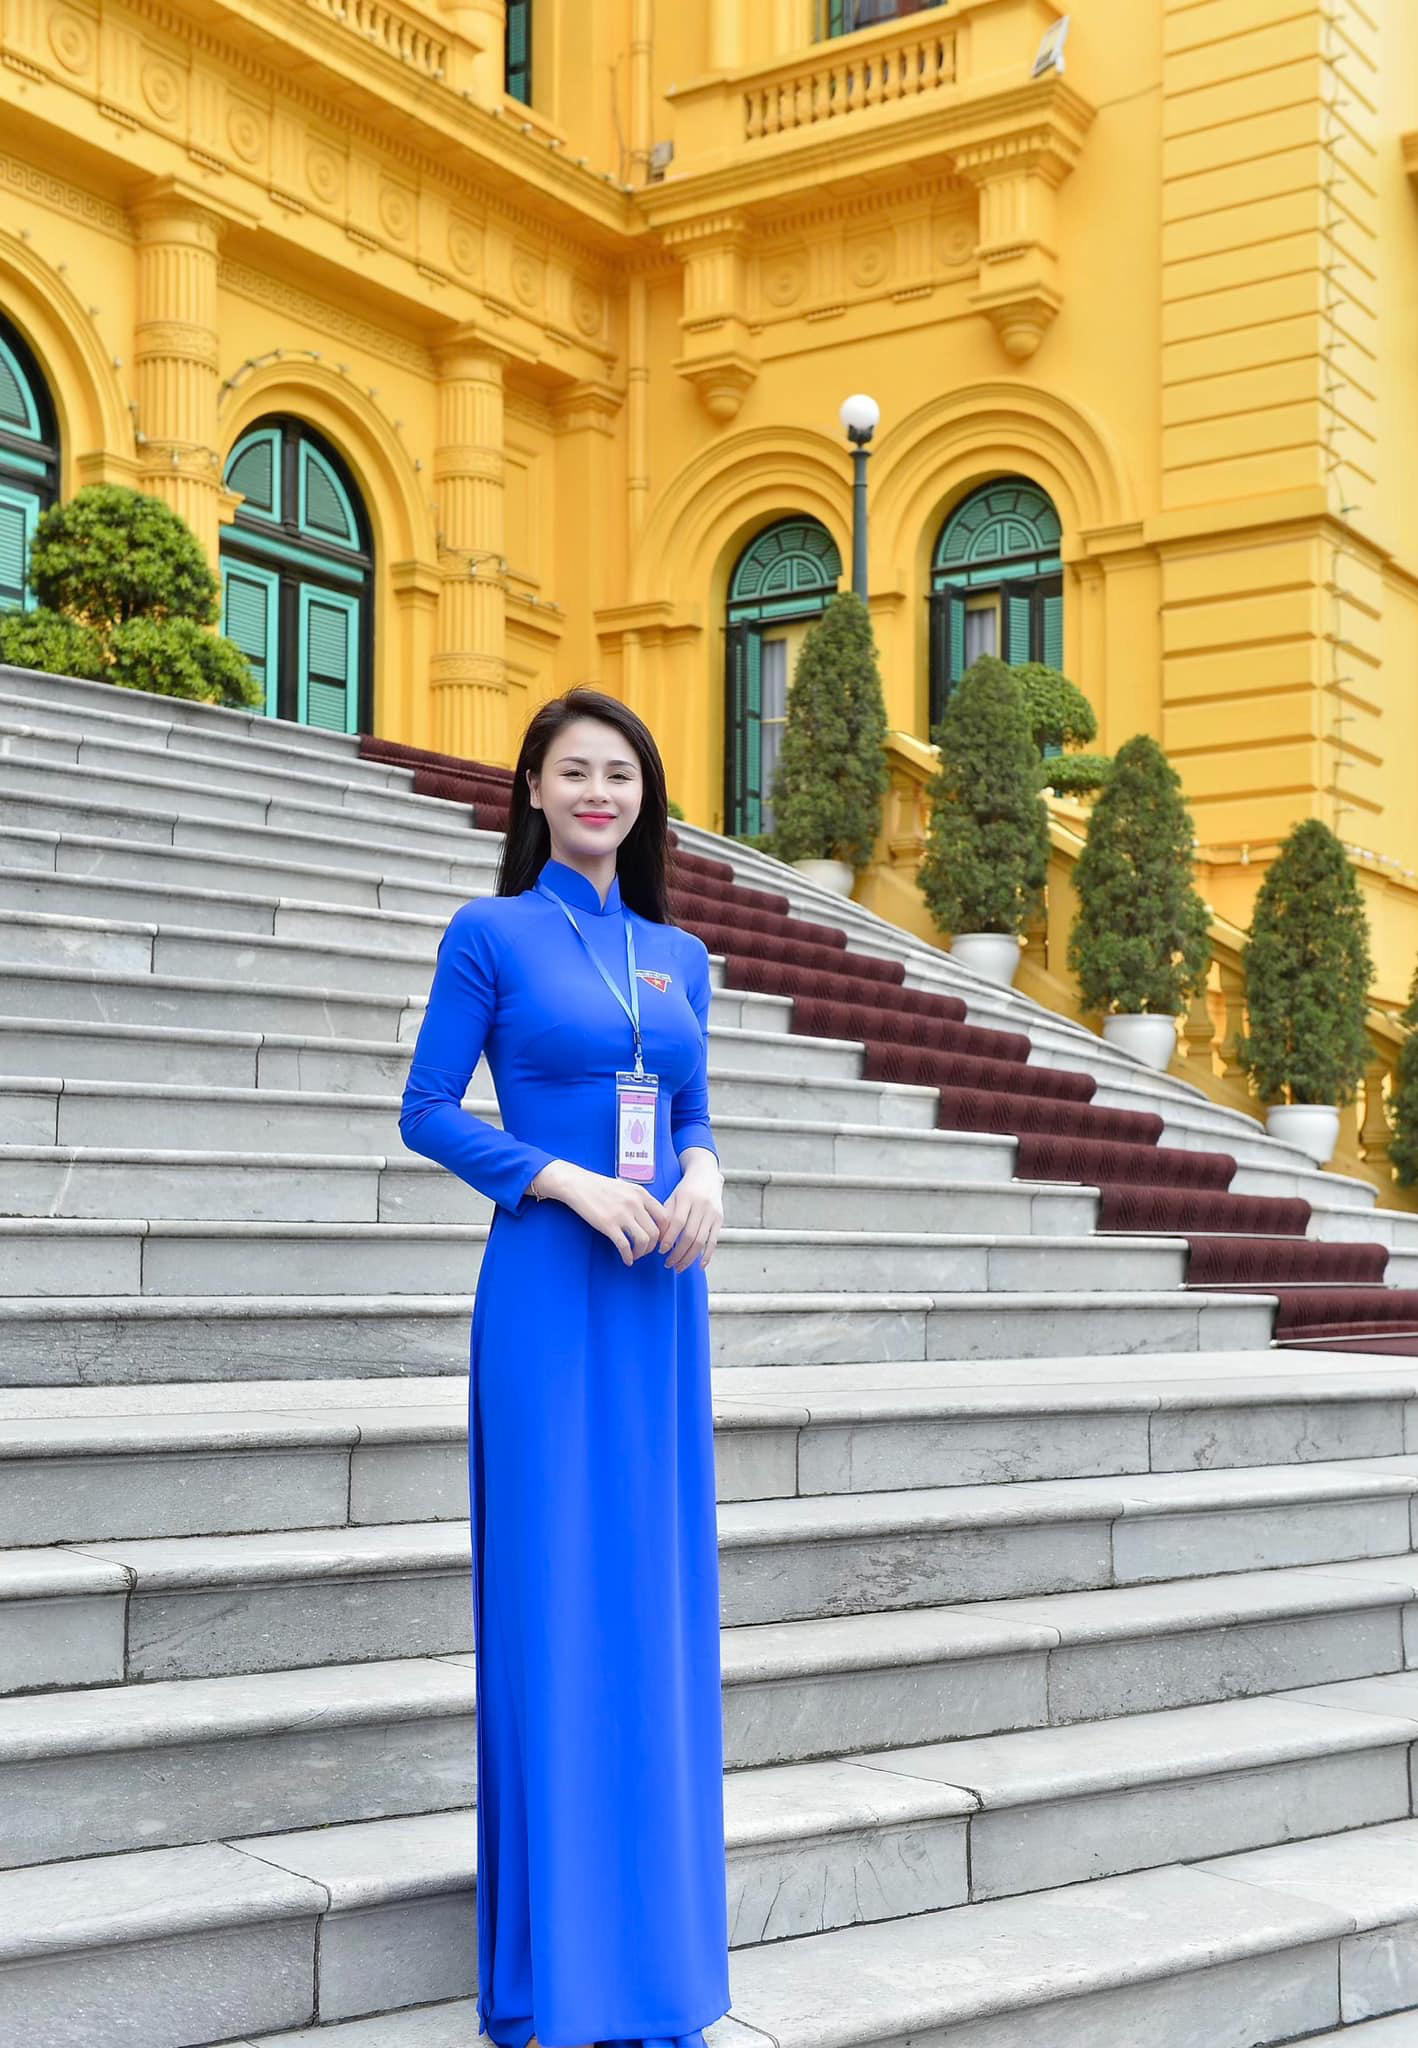 Diễn viên Việt tuần qua: Hồng Diễm diện áo tắm, Quỳnh Kool hoá nữ sinh trở lại trường xưa